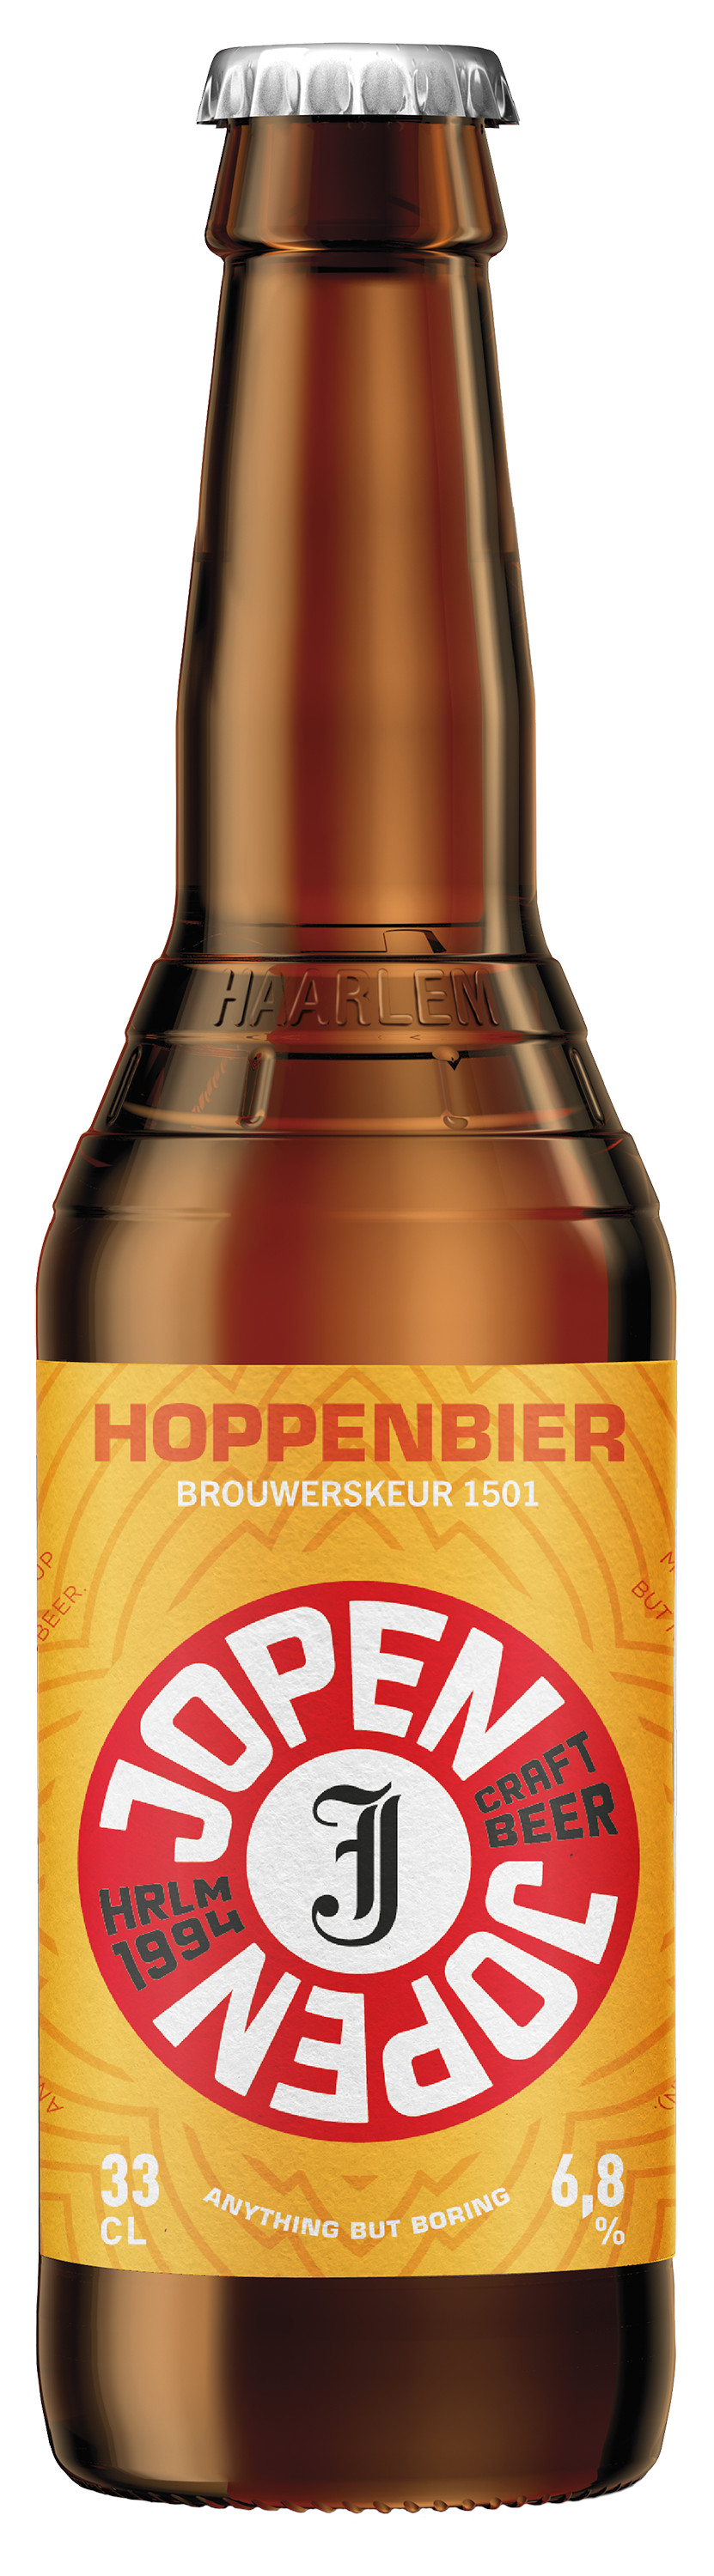 Jopen Hoppenbier Doos 12x33 cl 6,8%